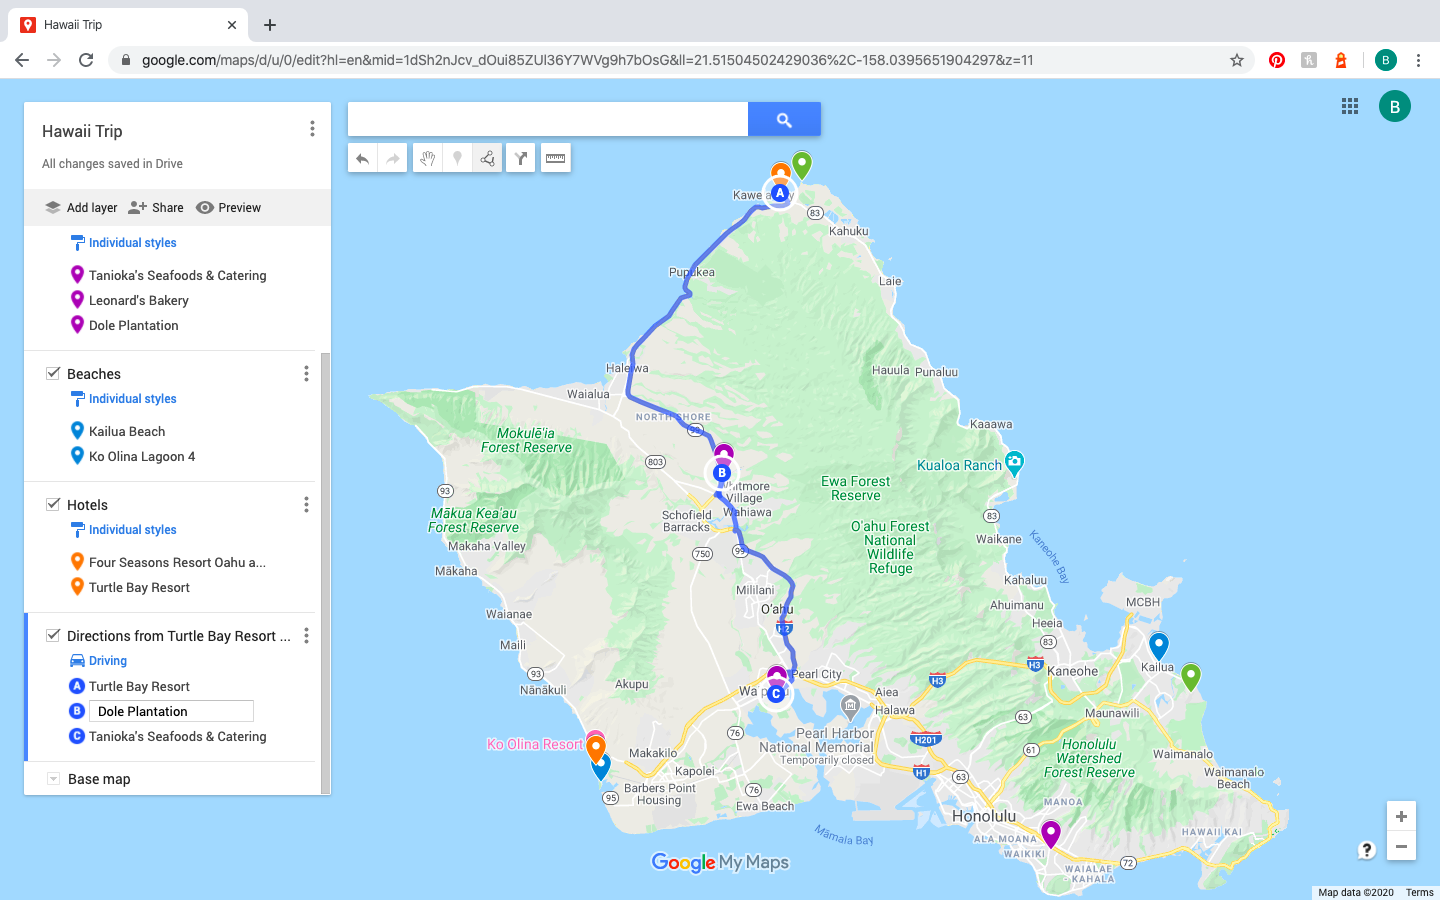 plan road trip google maps